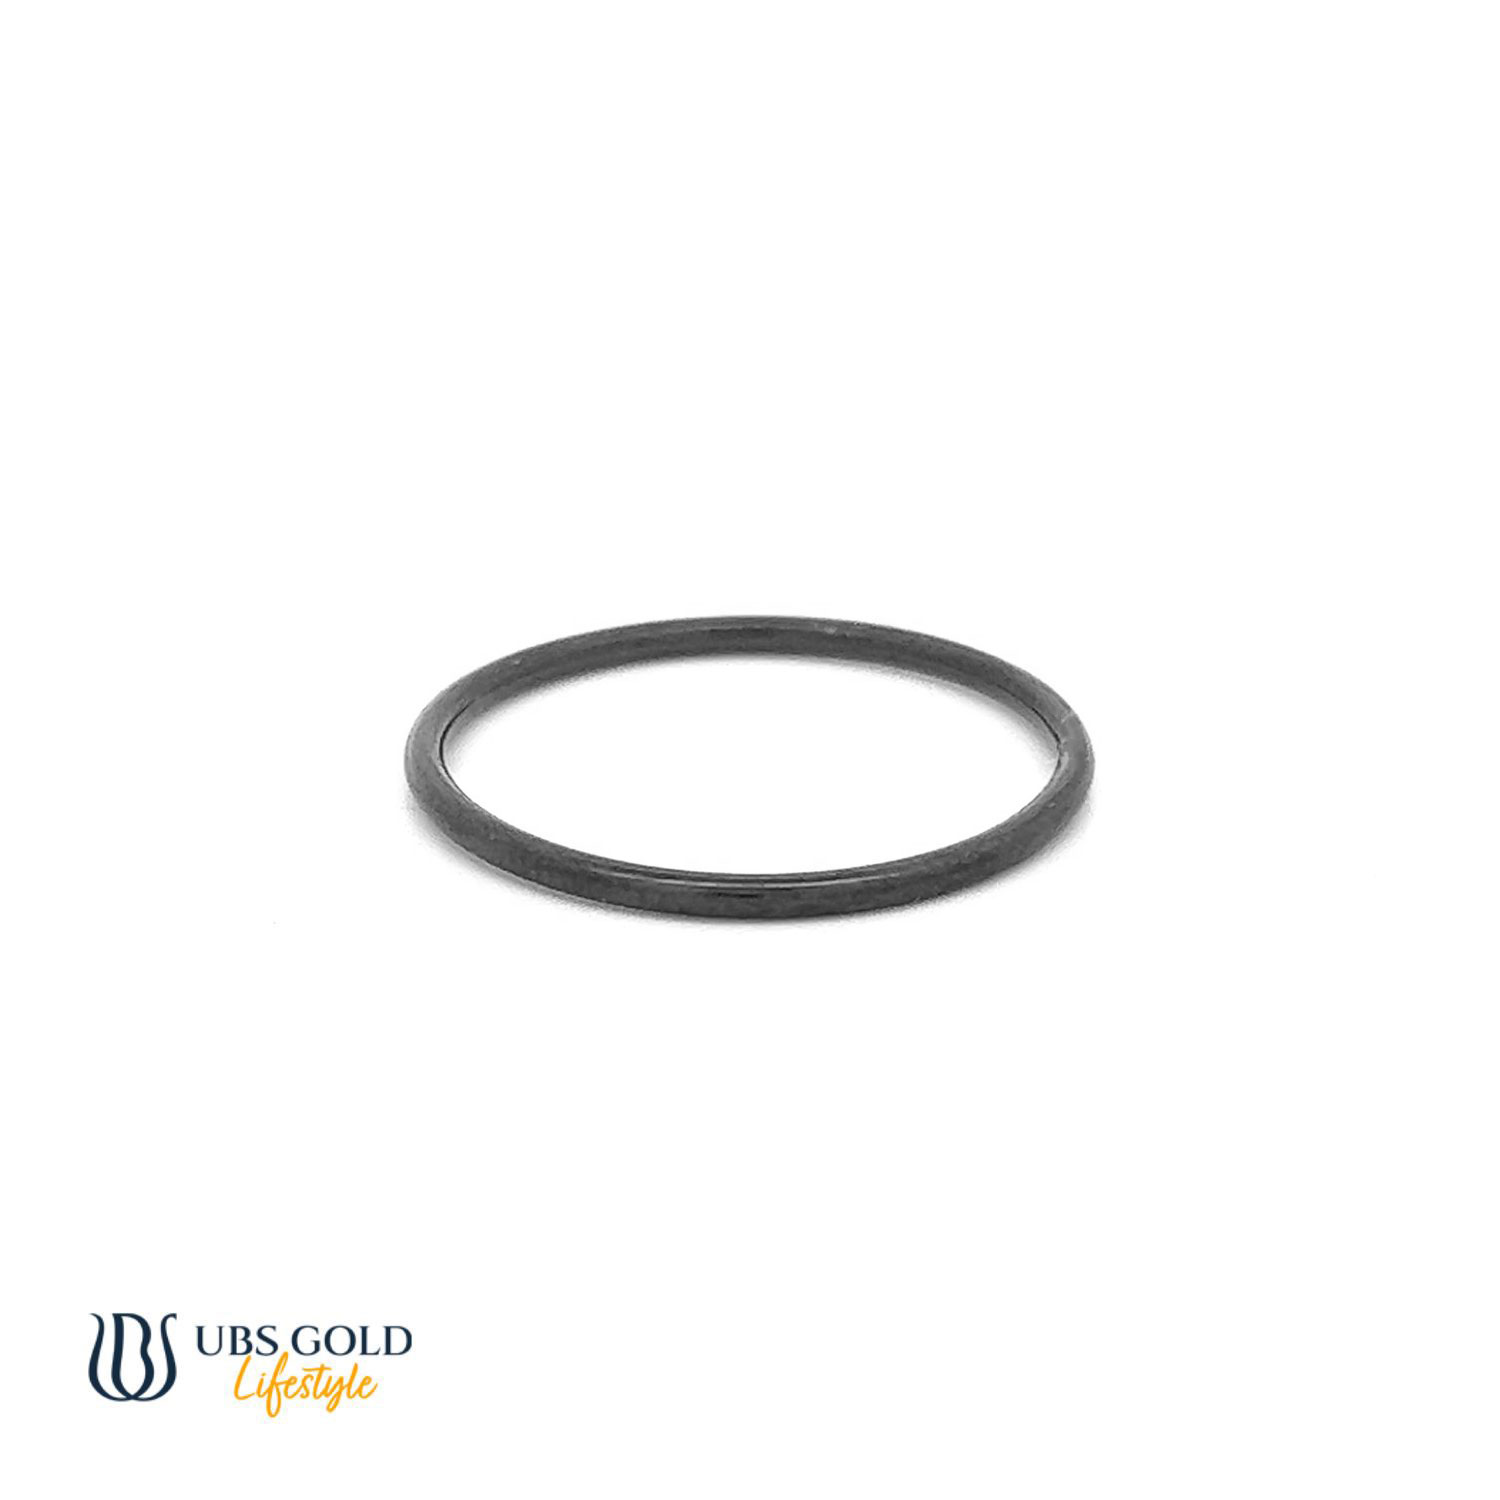 UBS Gold Cincin Emas - Cc16629P - 17K